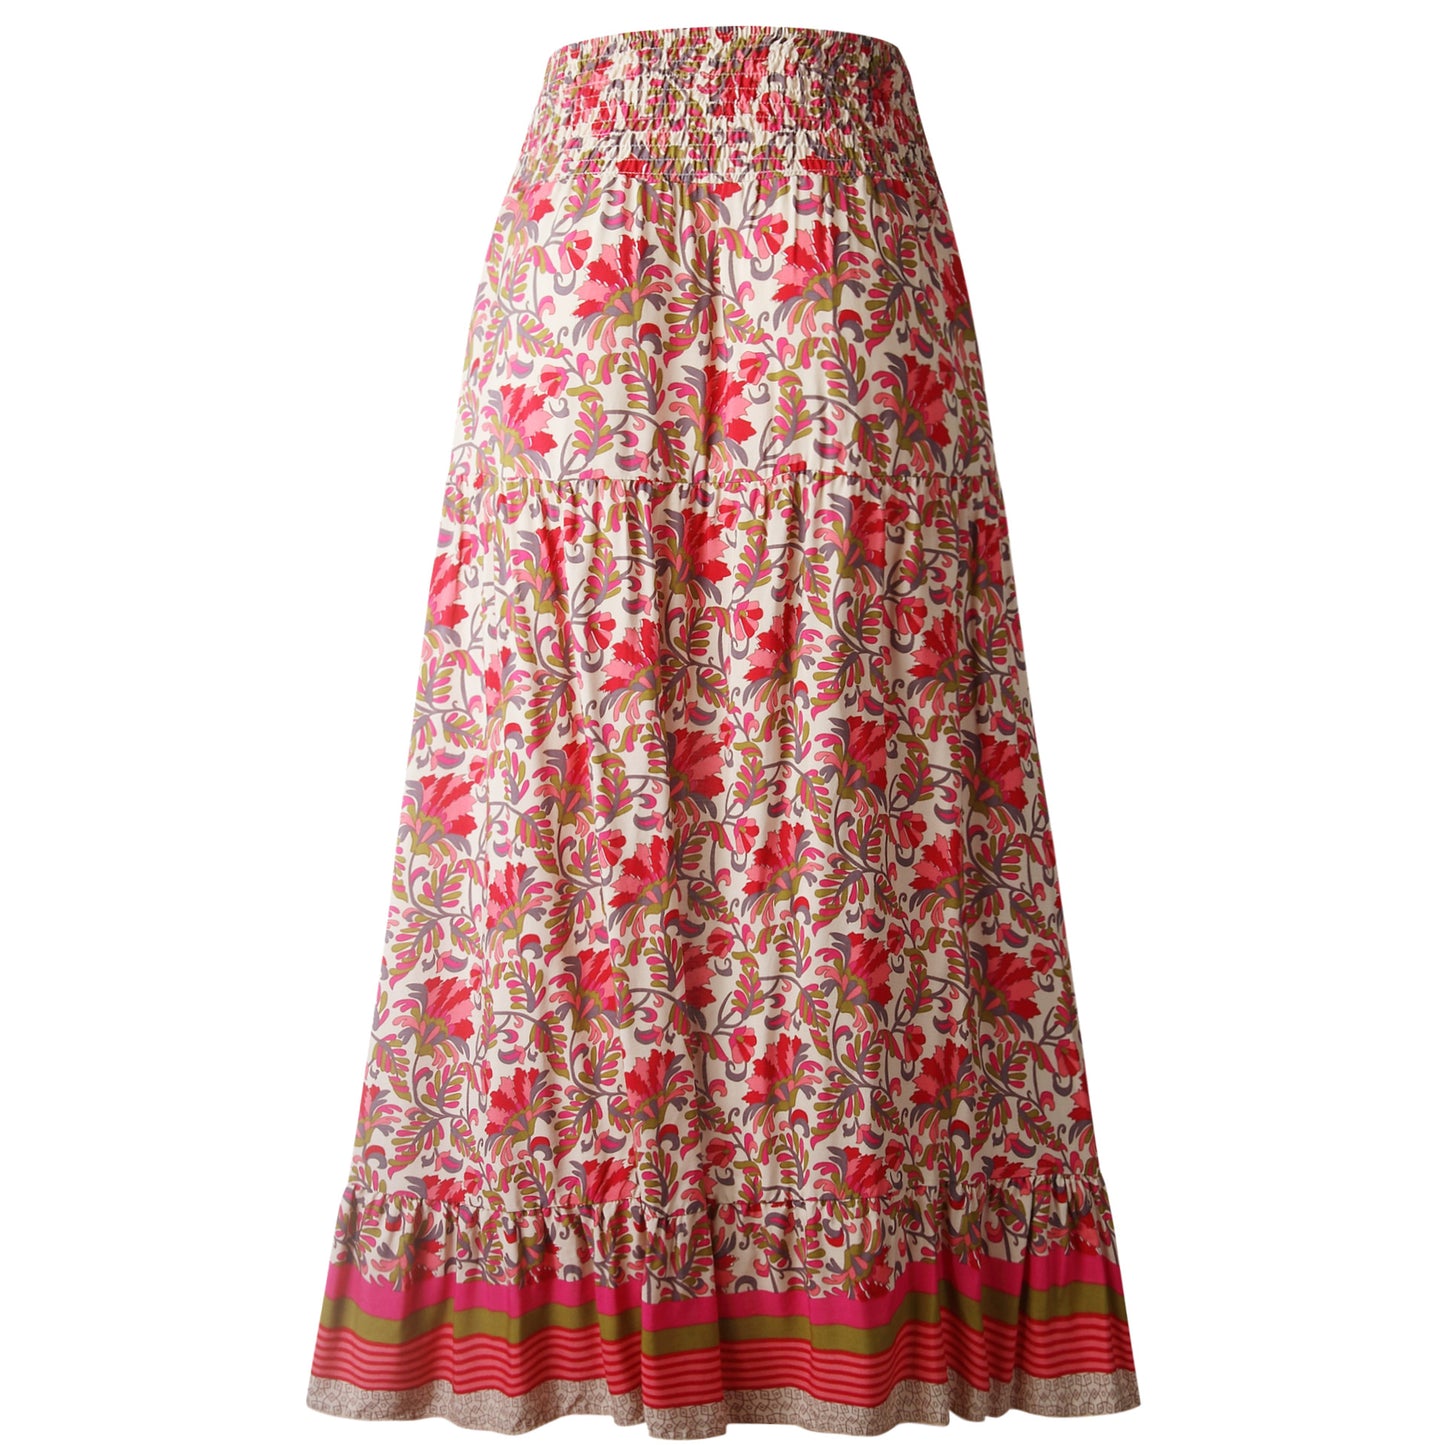 Irregular high waist women's long skirt